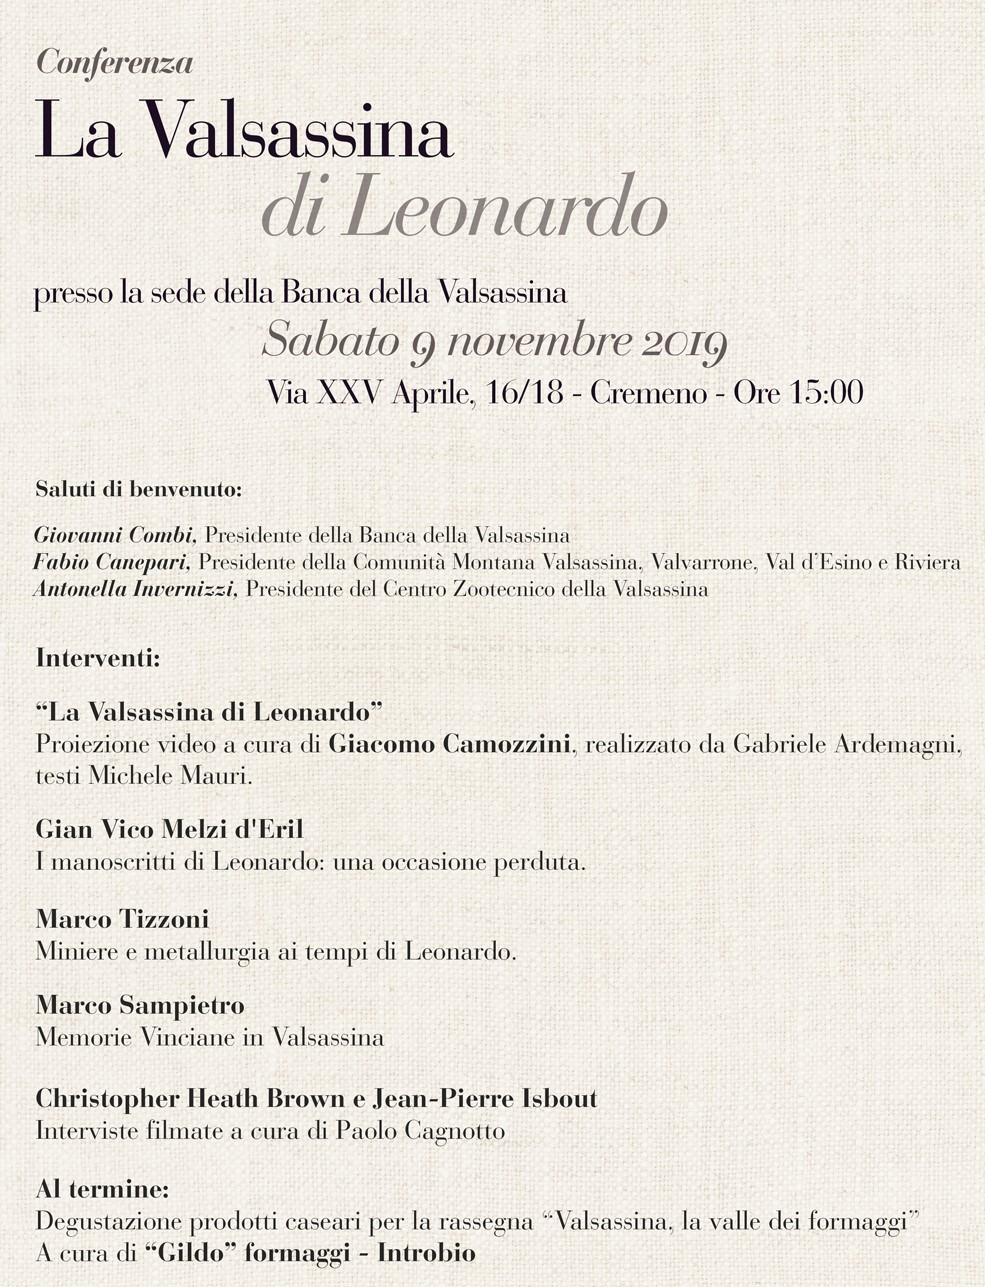 Conferenza “La Valsassina di Leonardo” a Cremeno